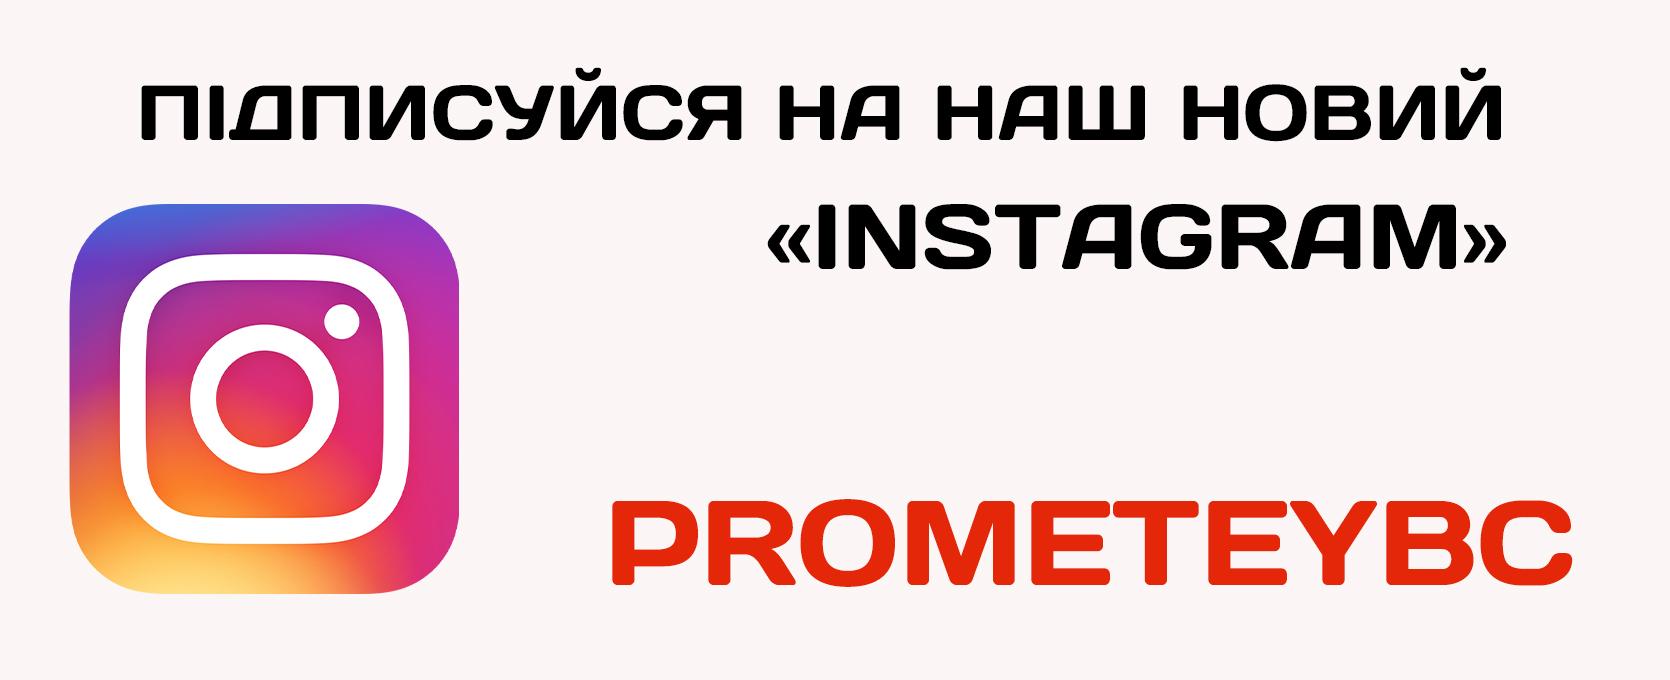 БК "Прометей" відтепер має новий Інстаграм акаунт!  